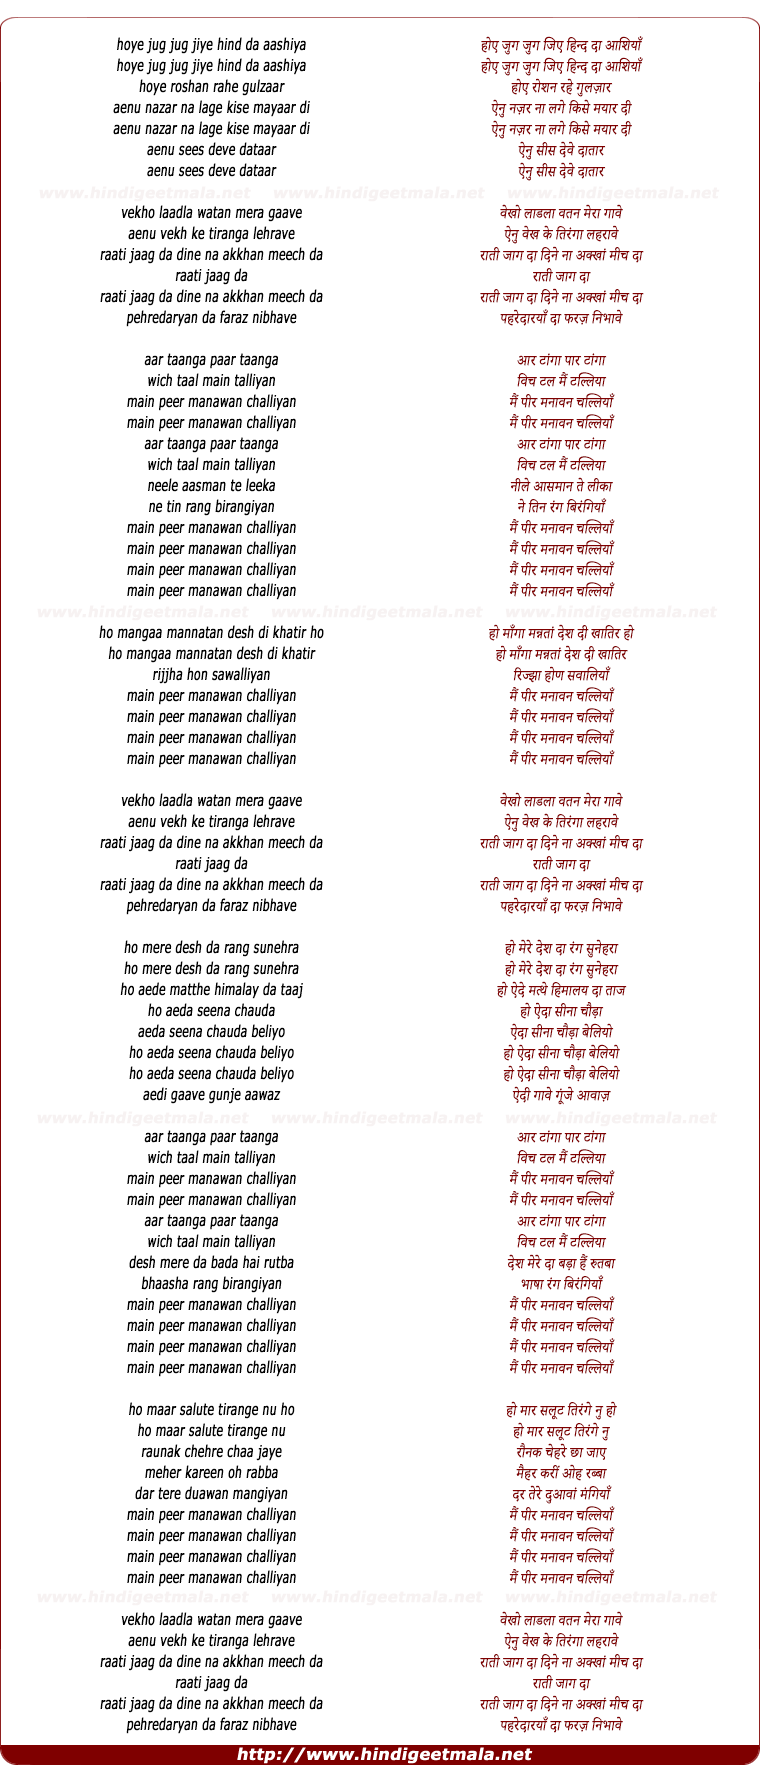 lyrics of song Peer Manaawan Challiyaan